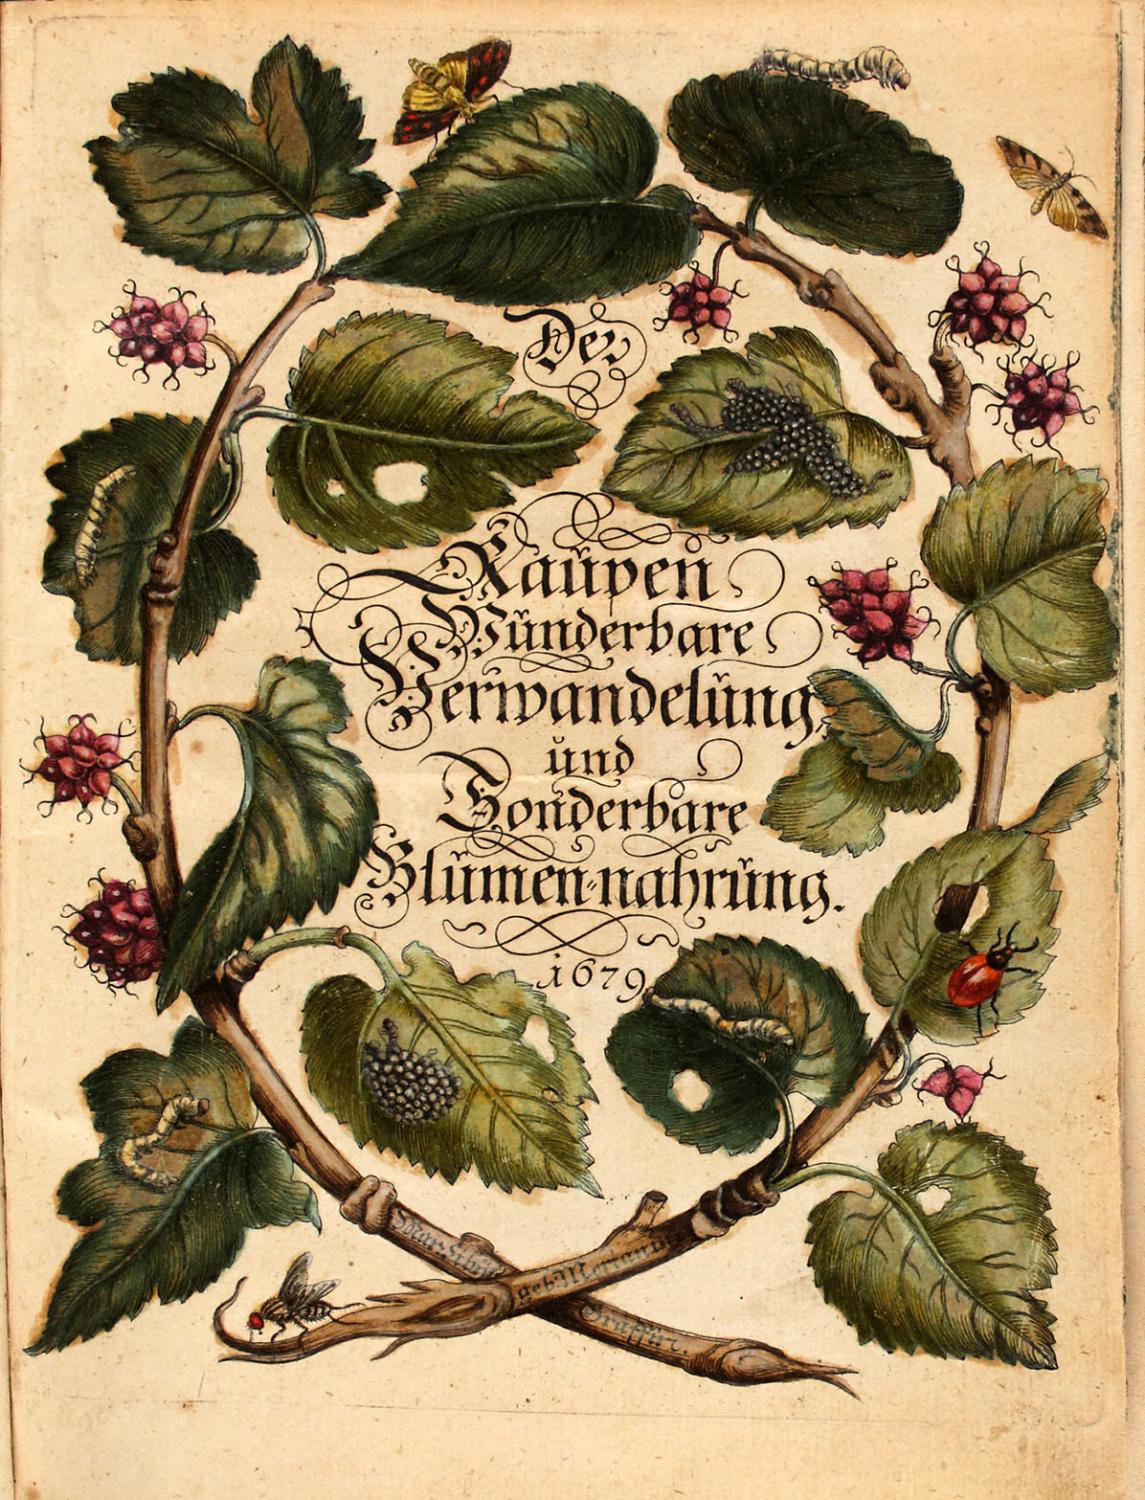 Buchtitel von Merians "Der Raupen wunderbare Verwandlung und sonderbare Blumennahrung"